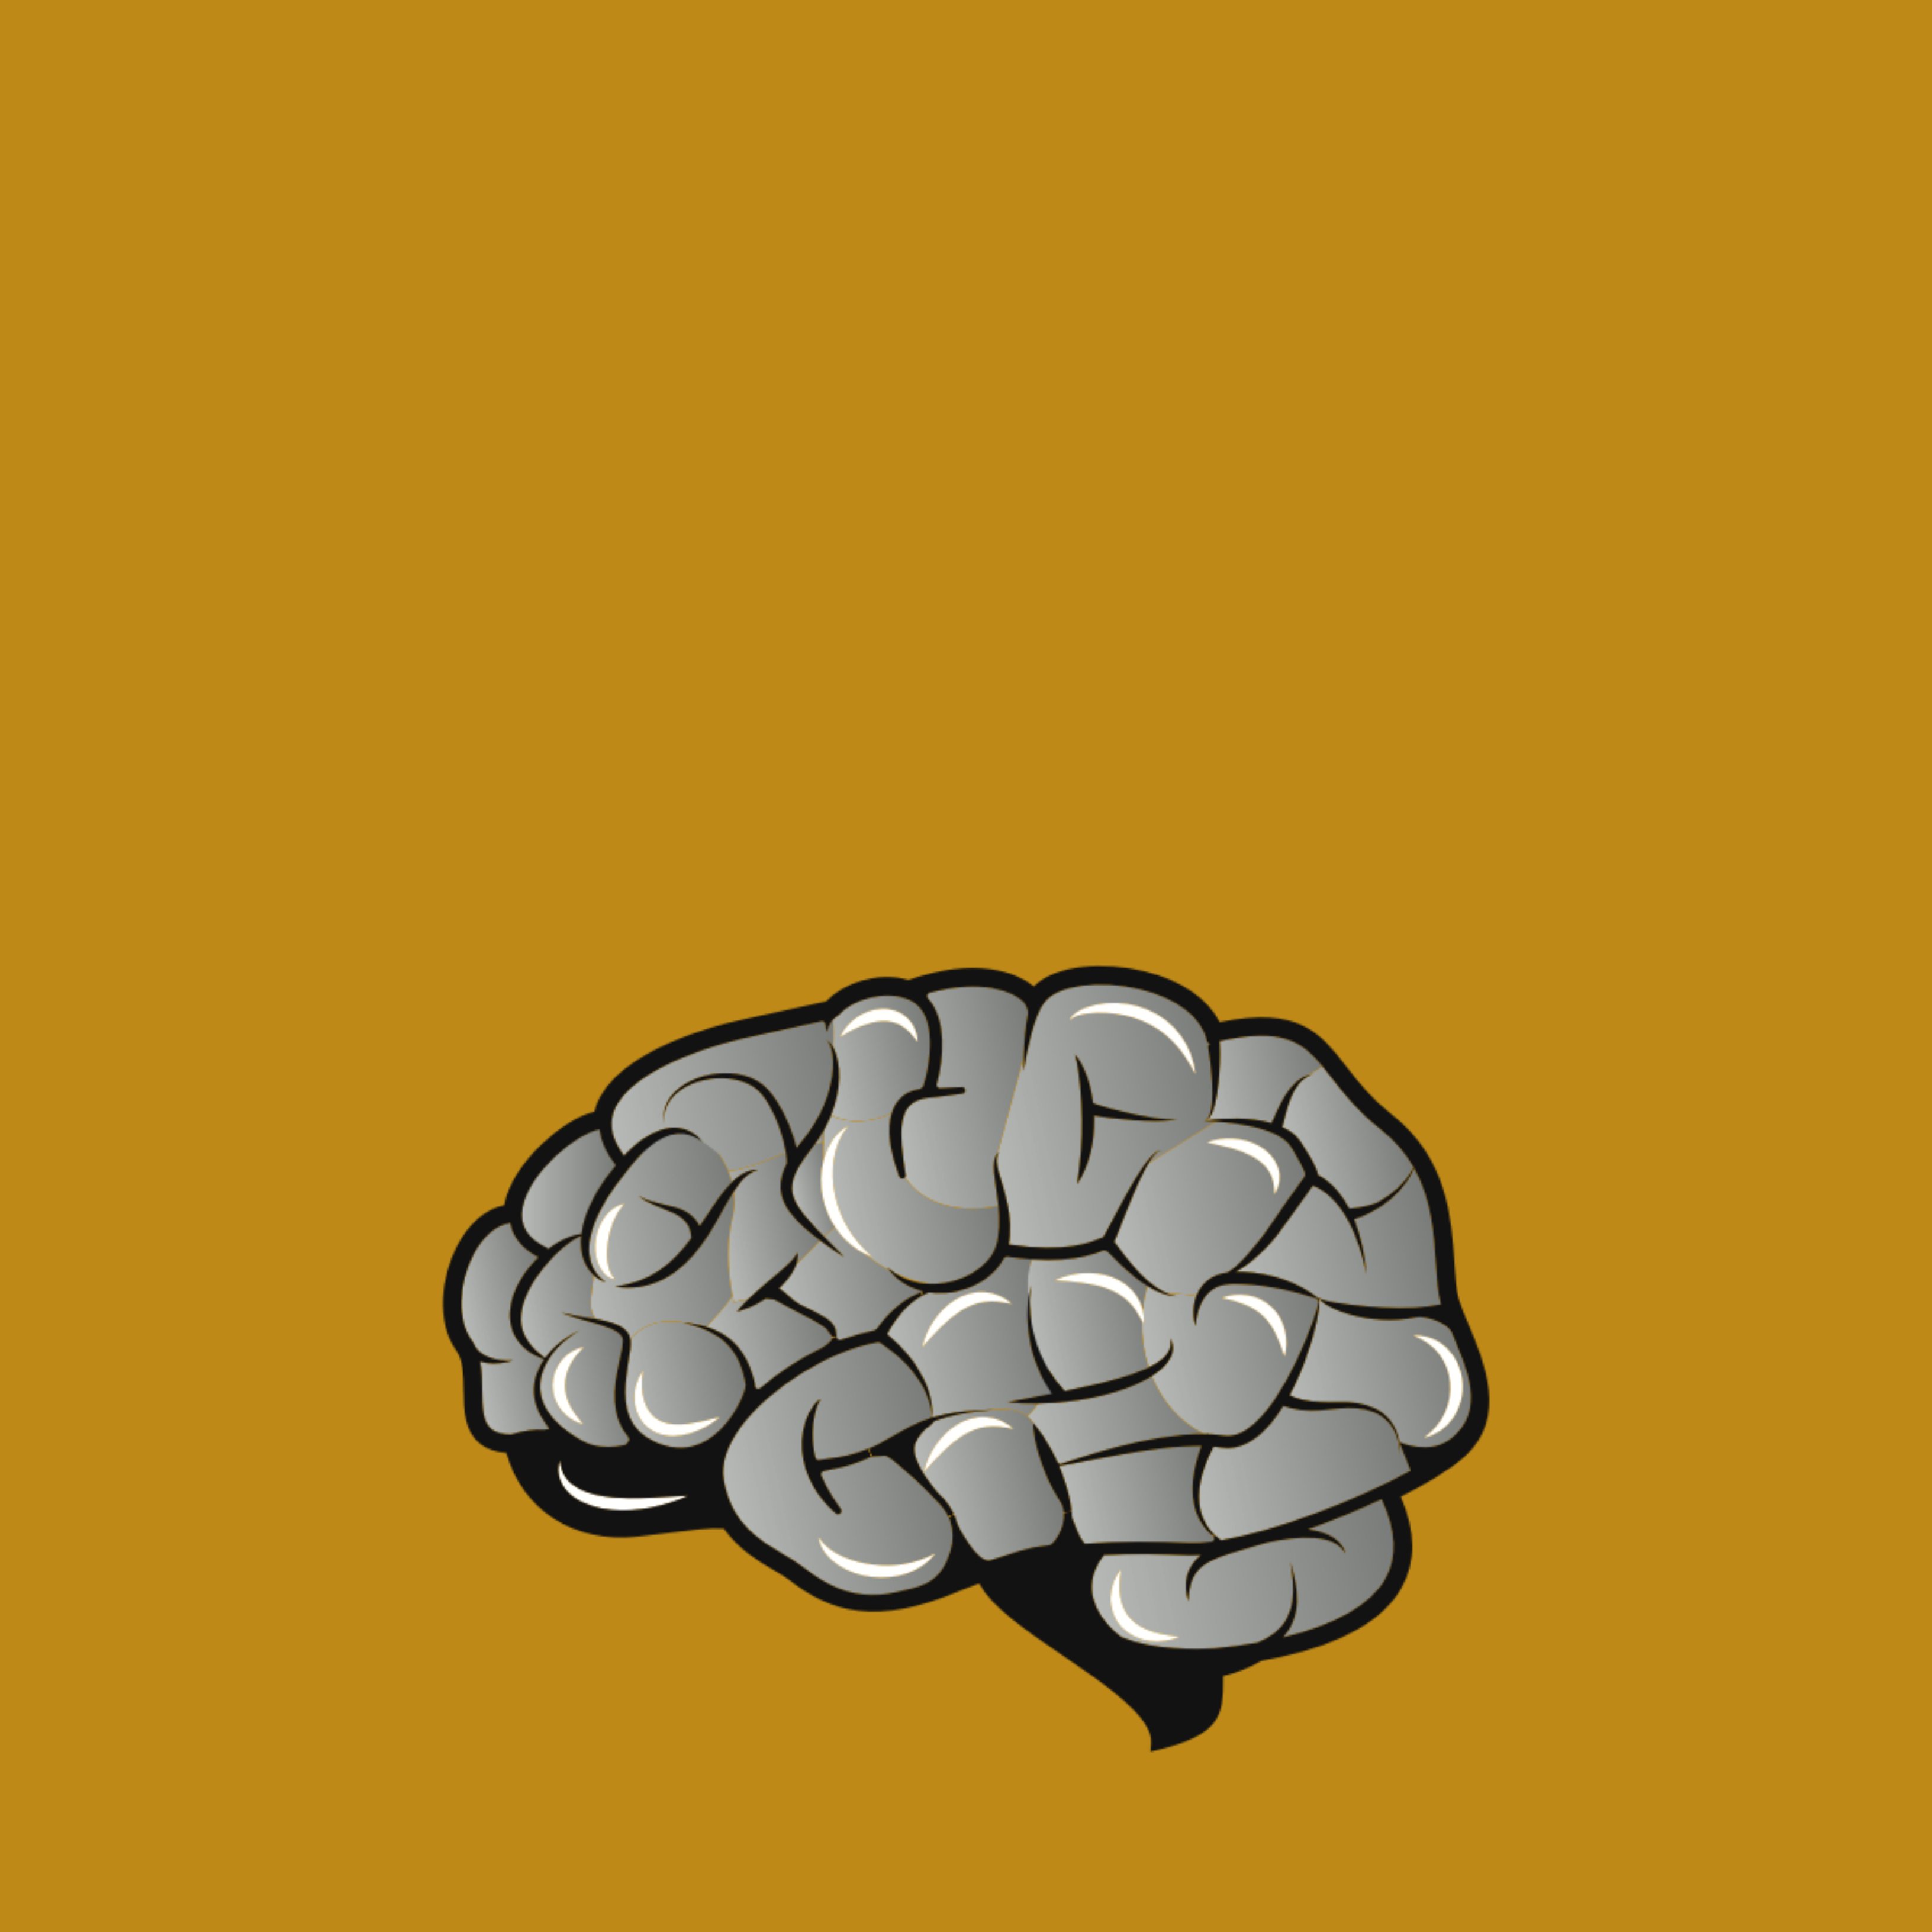 Per què el nostre cervell recorda més unes paraules que d'altres?